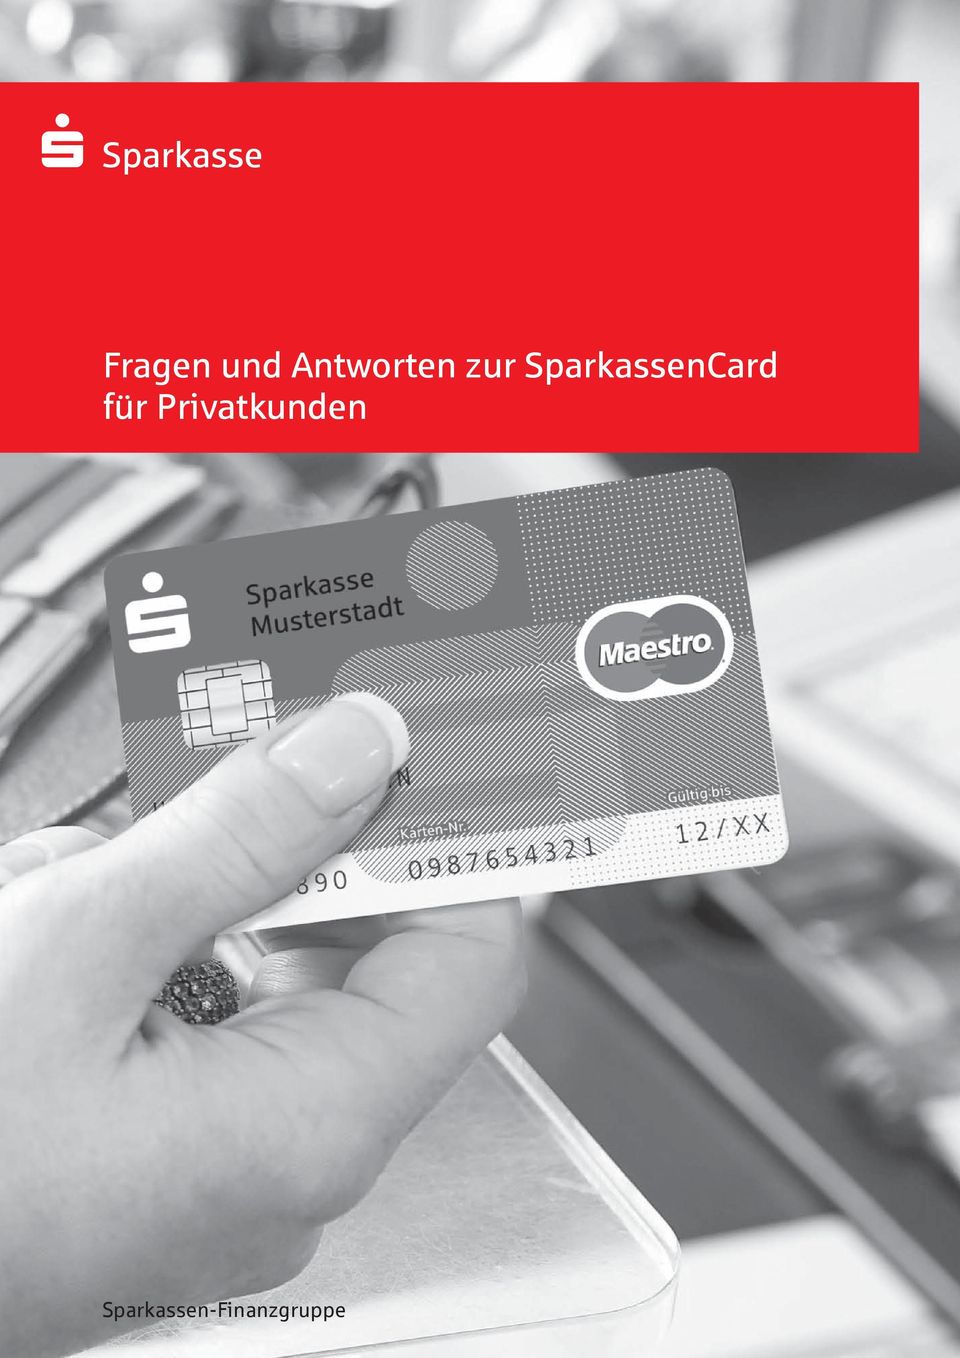 SparkassenCard für